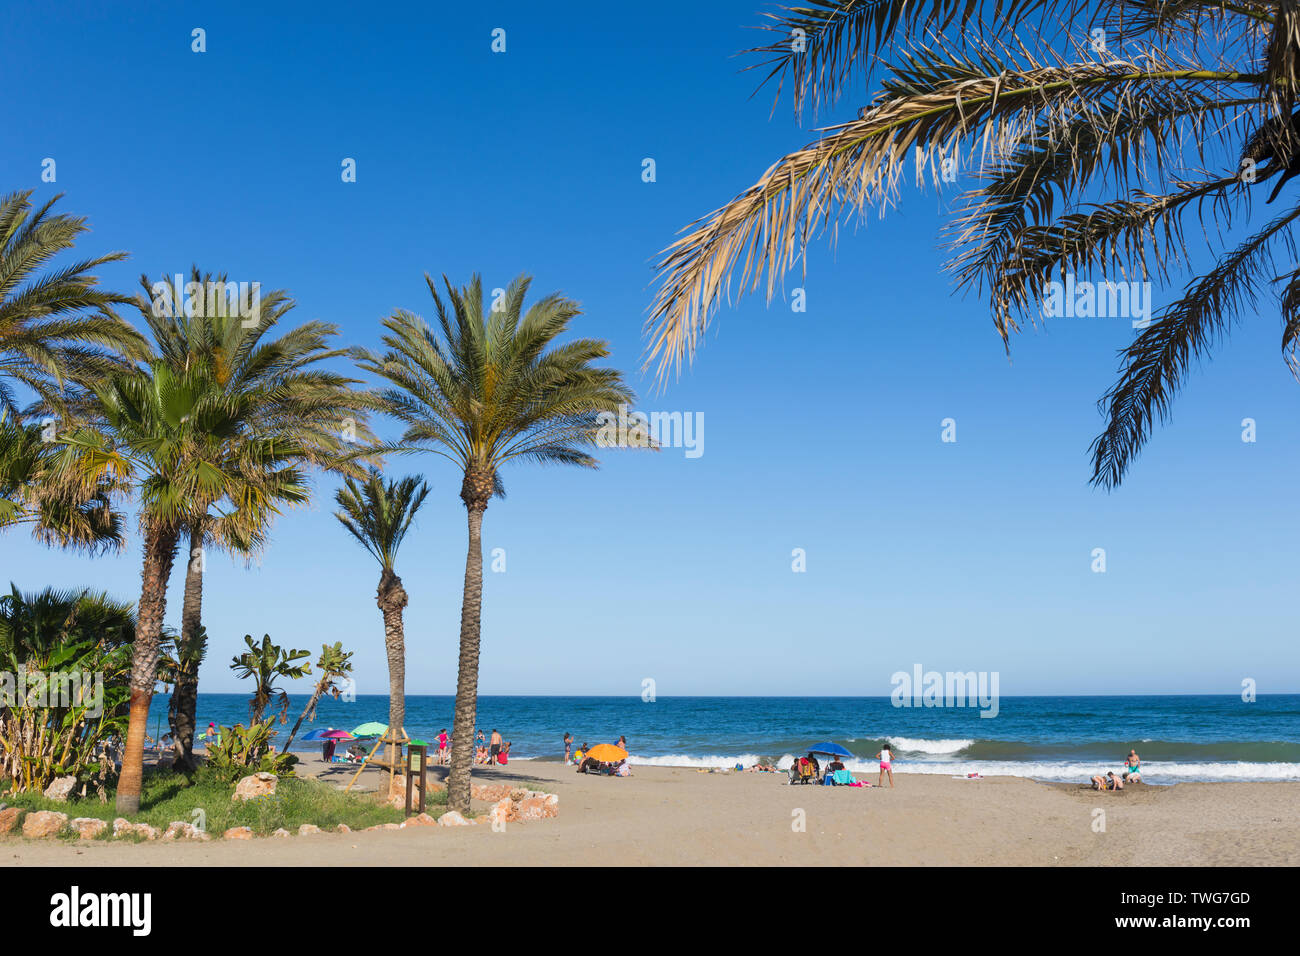 El Bombo beach, La Cala de Mijas, Costa del Sol, provincia di Malaga, Andalusia, Spagna meridionale. Foto Stock